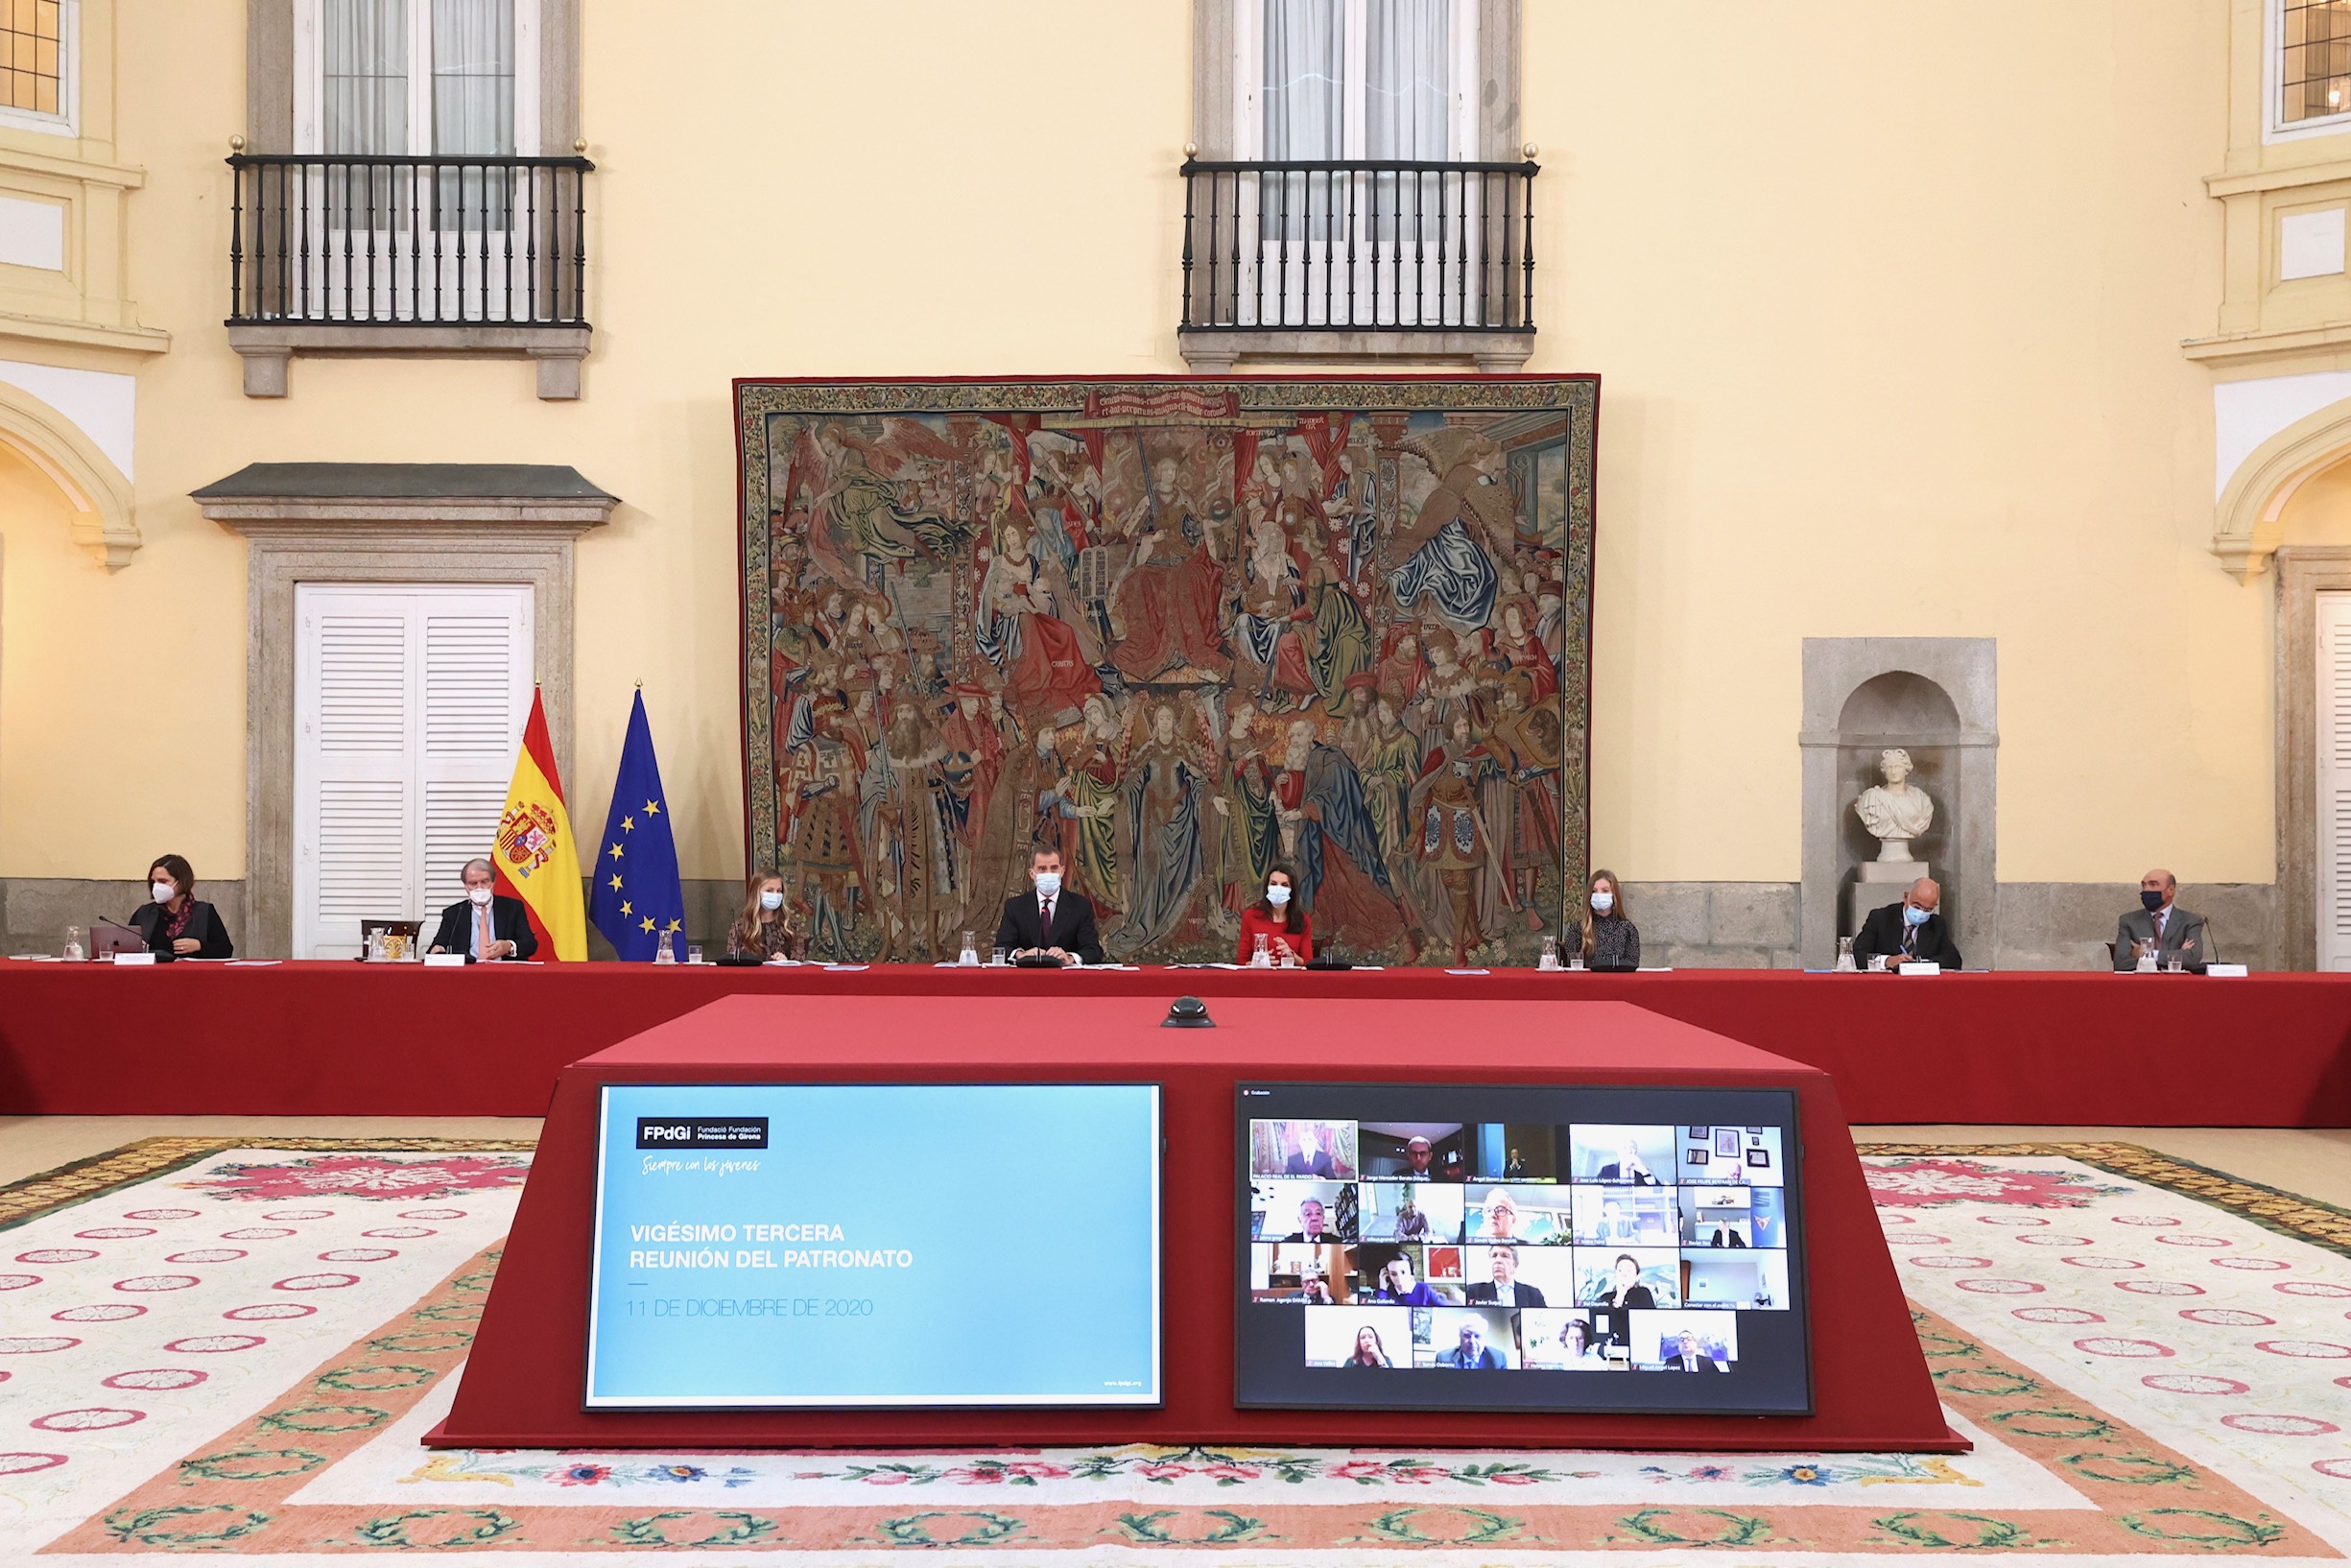 Patronat de la Fundació amb presència de la presidenta d’honor, S.A.R. la Princesa d’Astúries i Girona